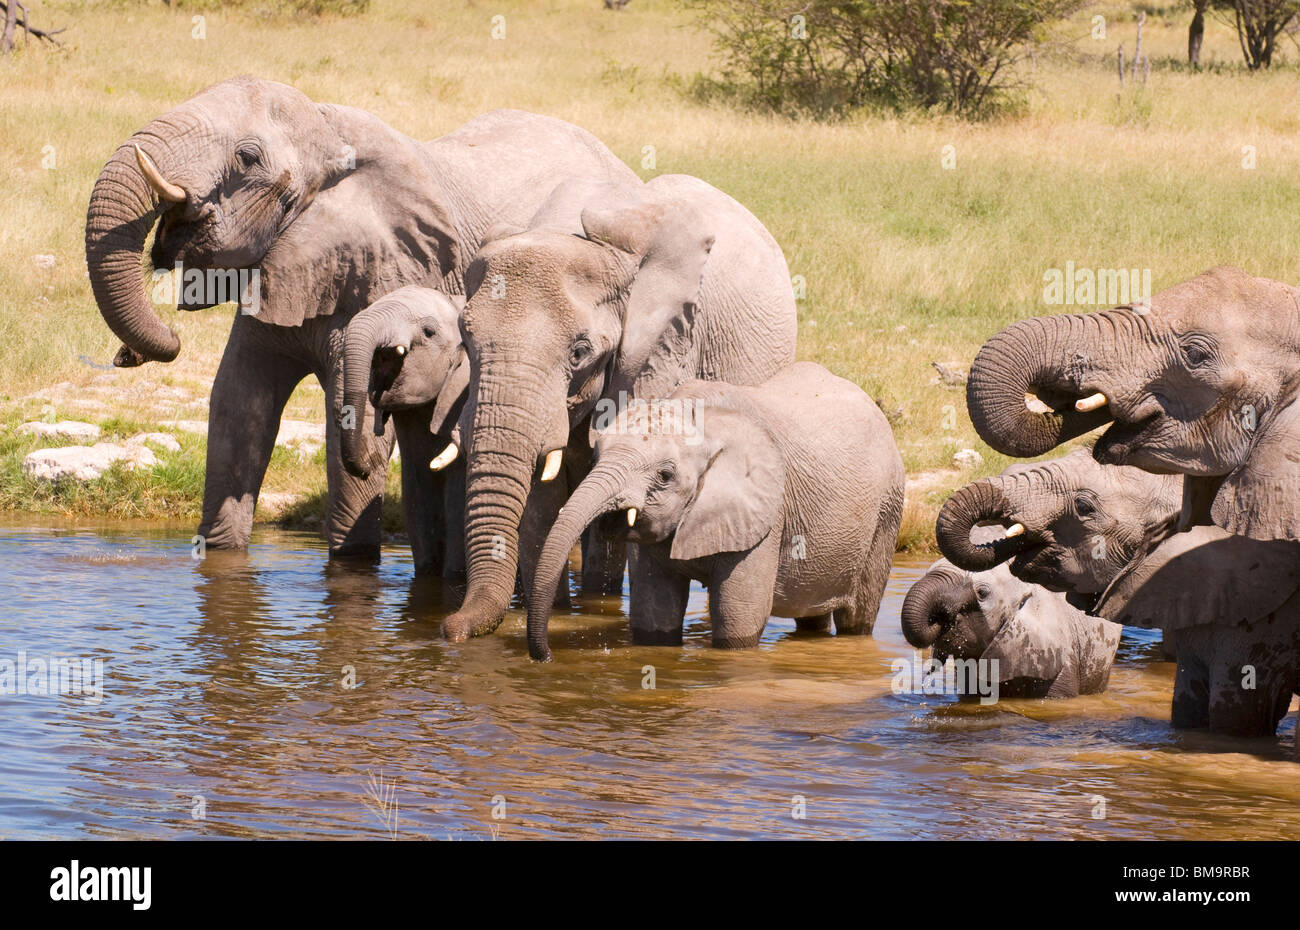 Elephants drinking in a waterhole Stock Photo